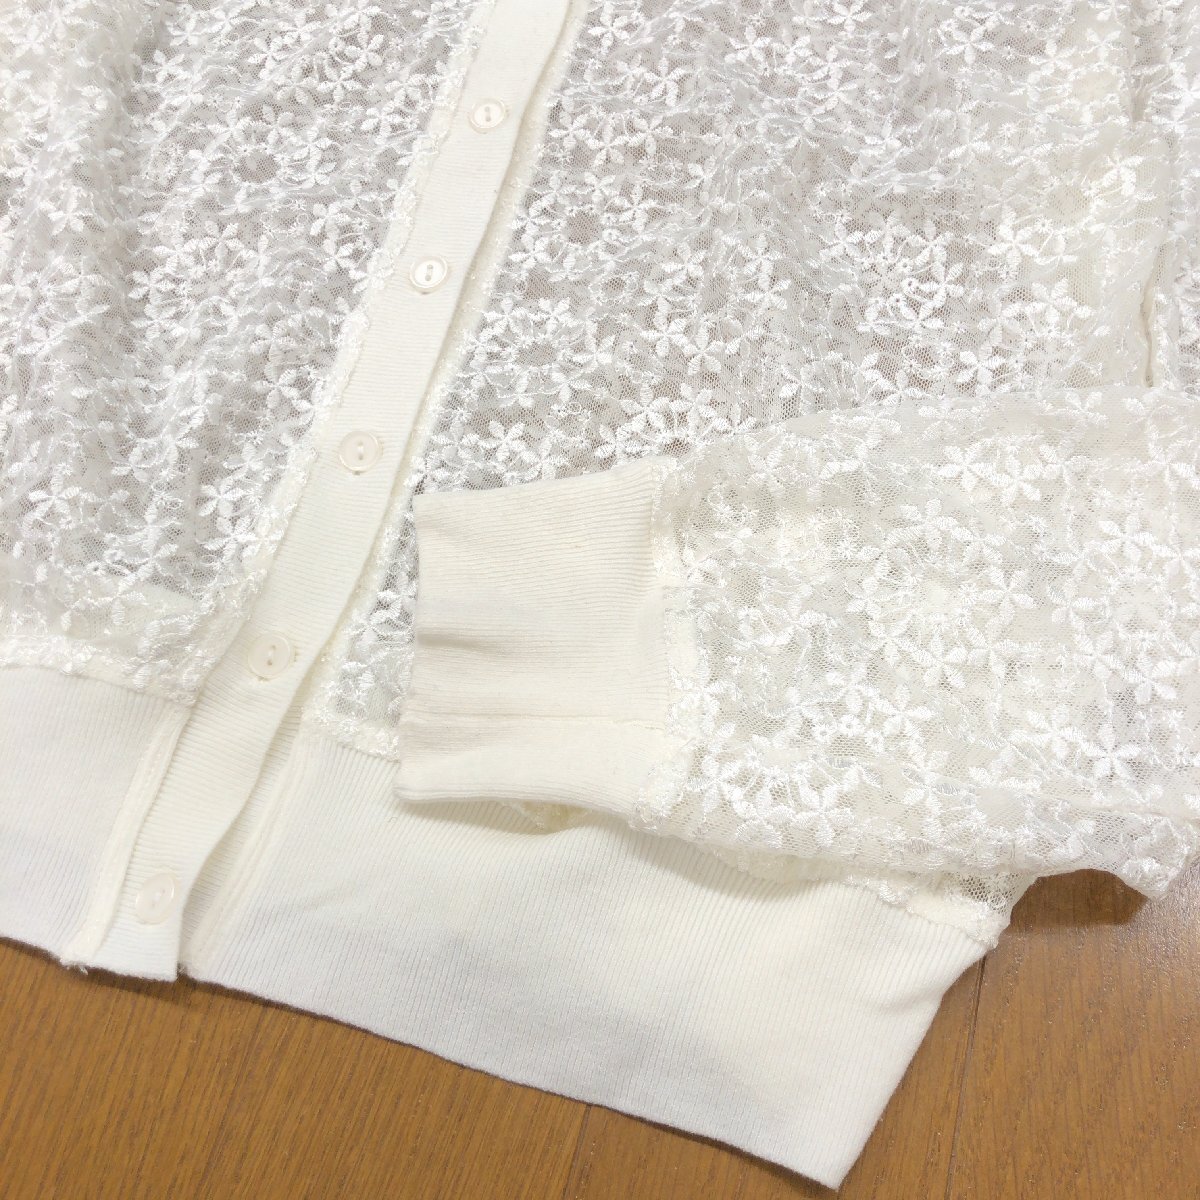 DoCLASSE ドゥクラッセ レース カーディガン 13(XL) 白 ホワイト 羽織り シースルー 花柄 LL 2L ゆったり 大きい 国内正規品 レディース_画像5